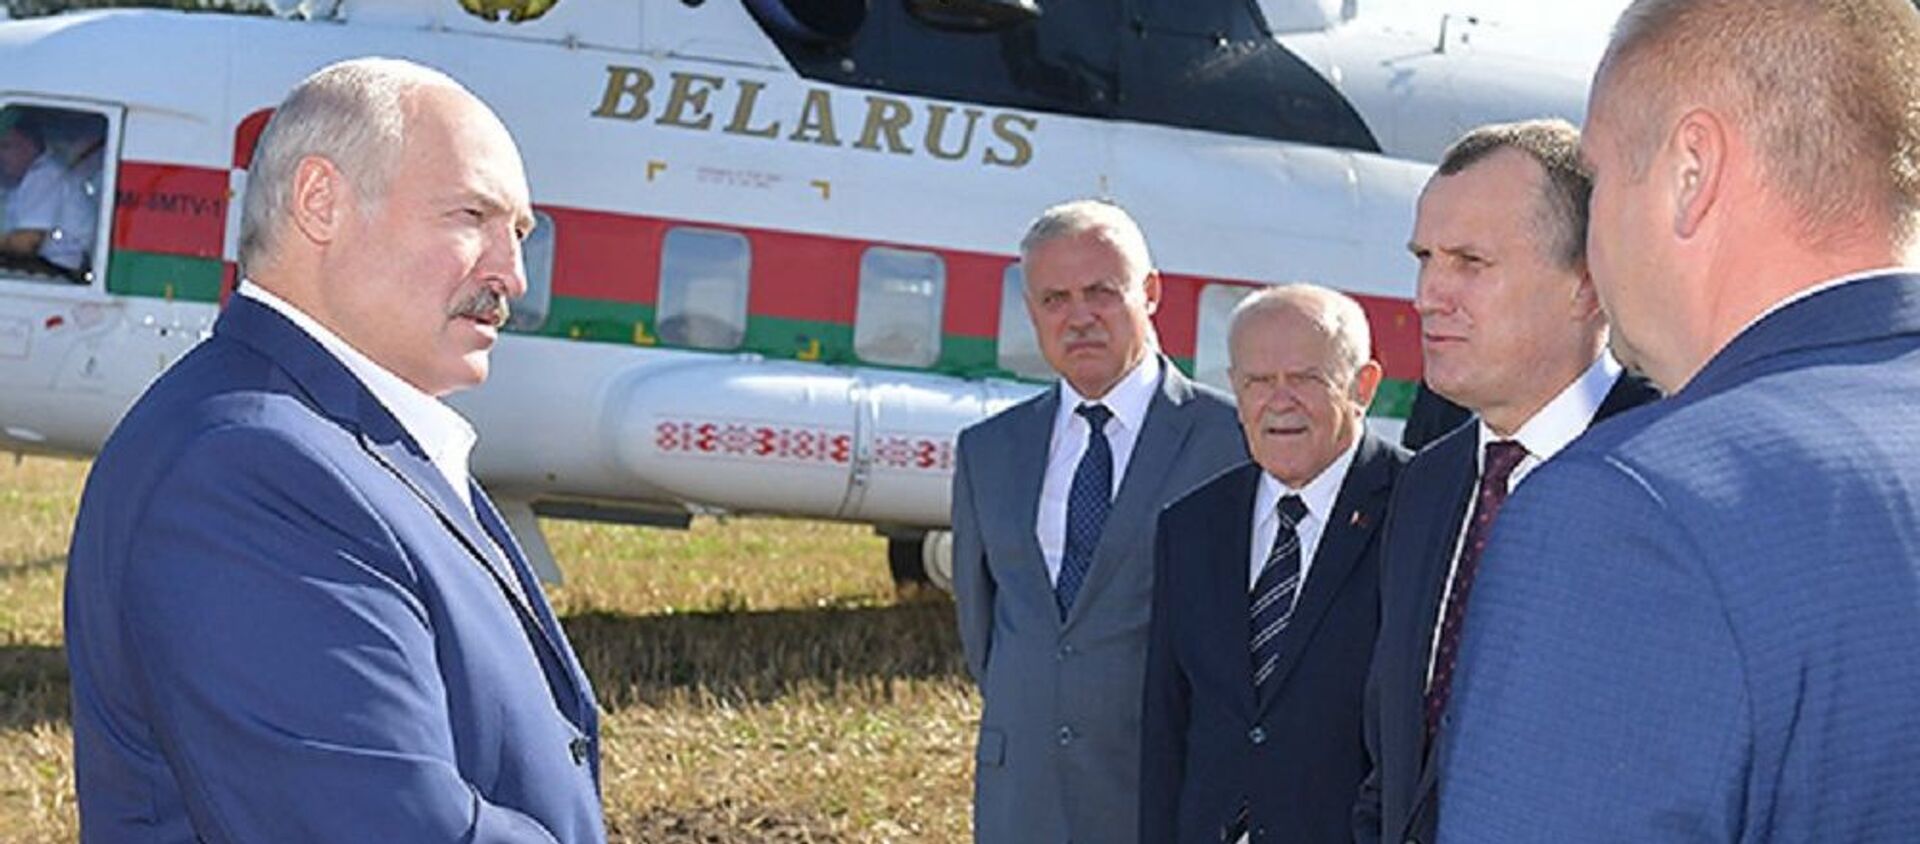 Лукашенко пообещал жестокие разборки за падеж скота - Sputnik Беларусь, 1920, 16.08.2019